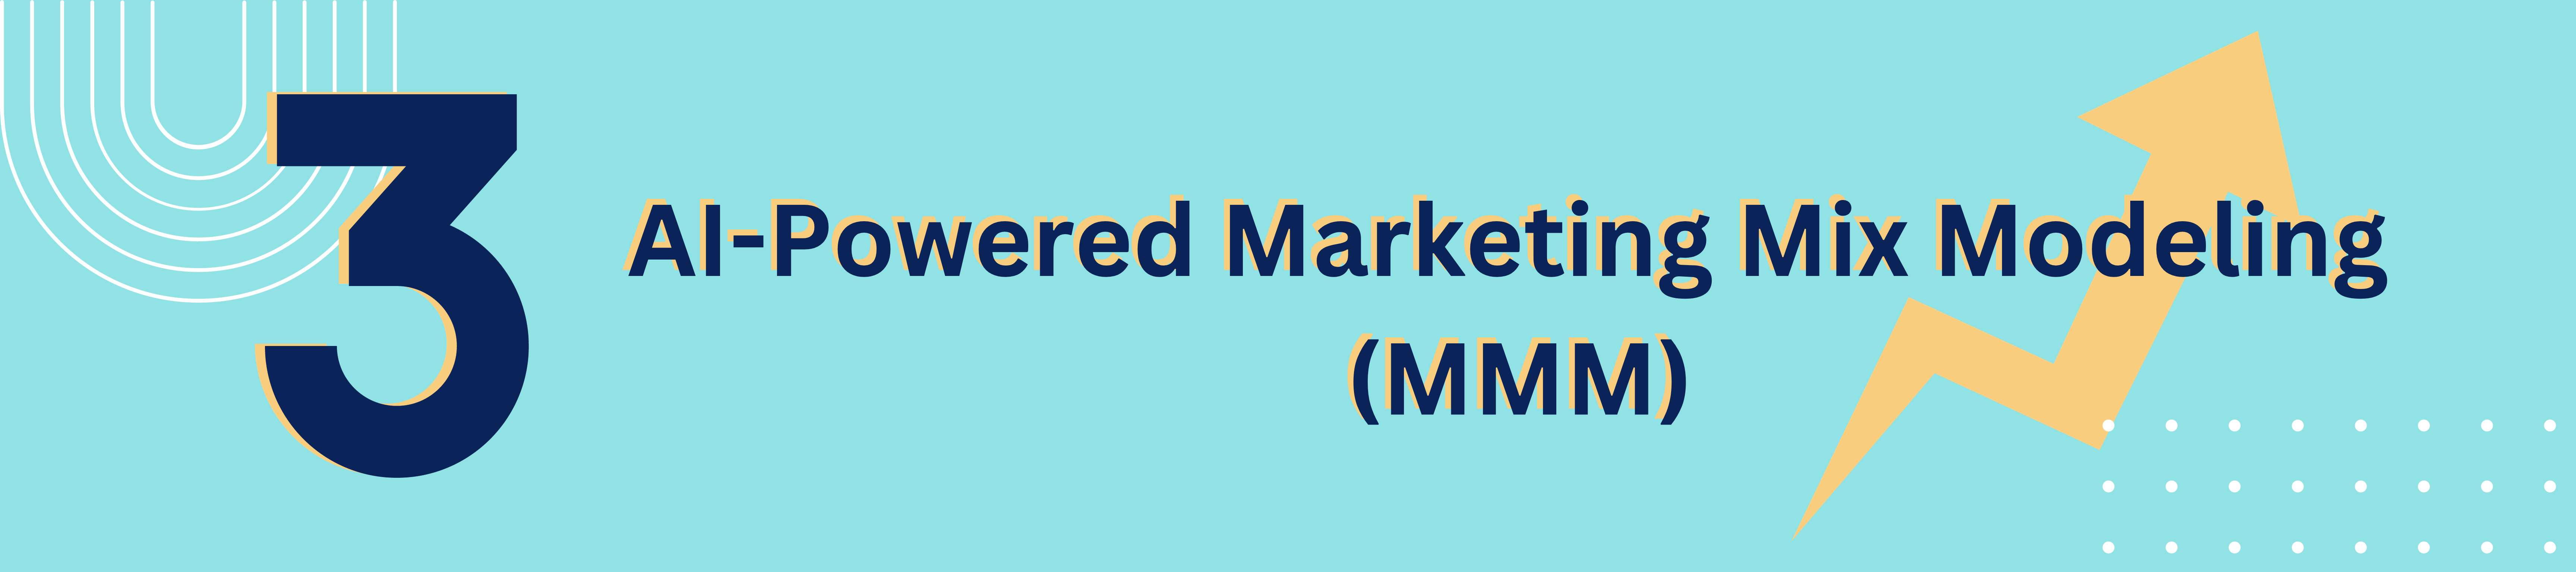 3. AI-Powered Marketing Mix Modeling (MMM)